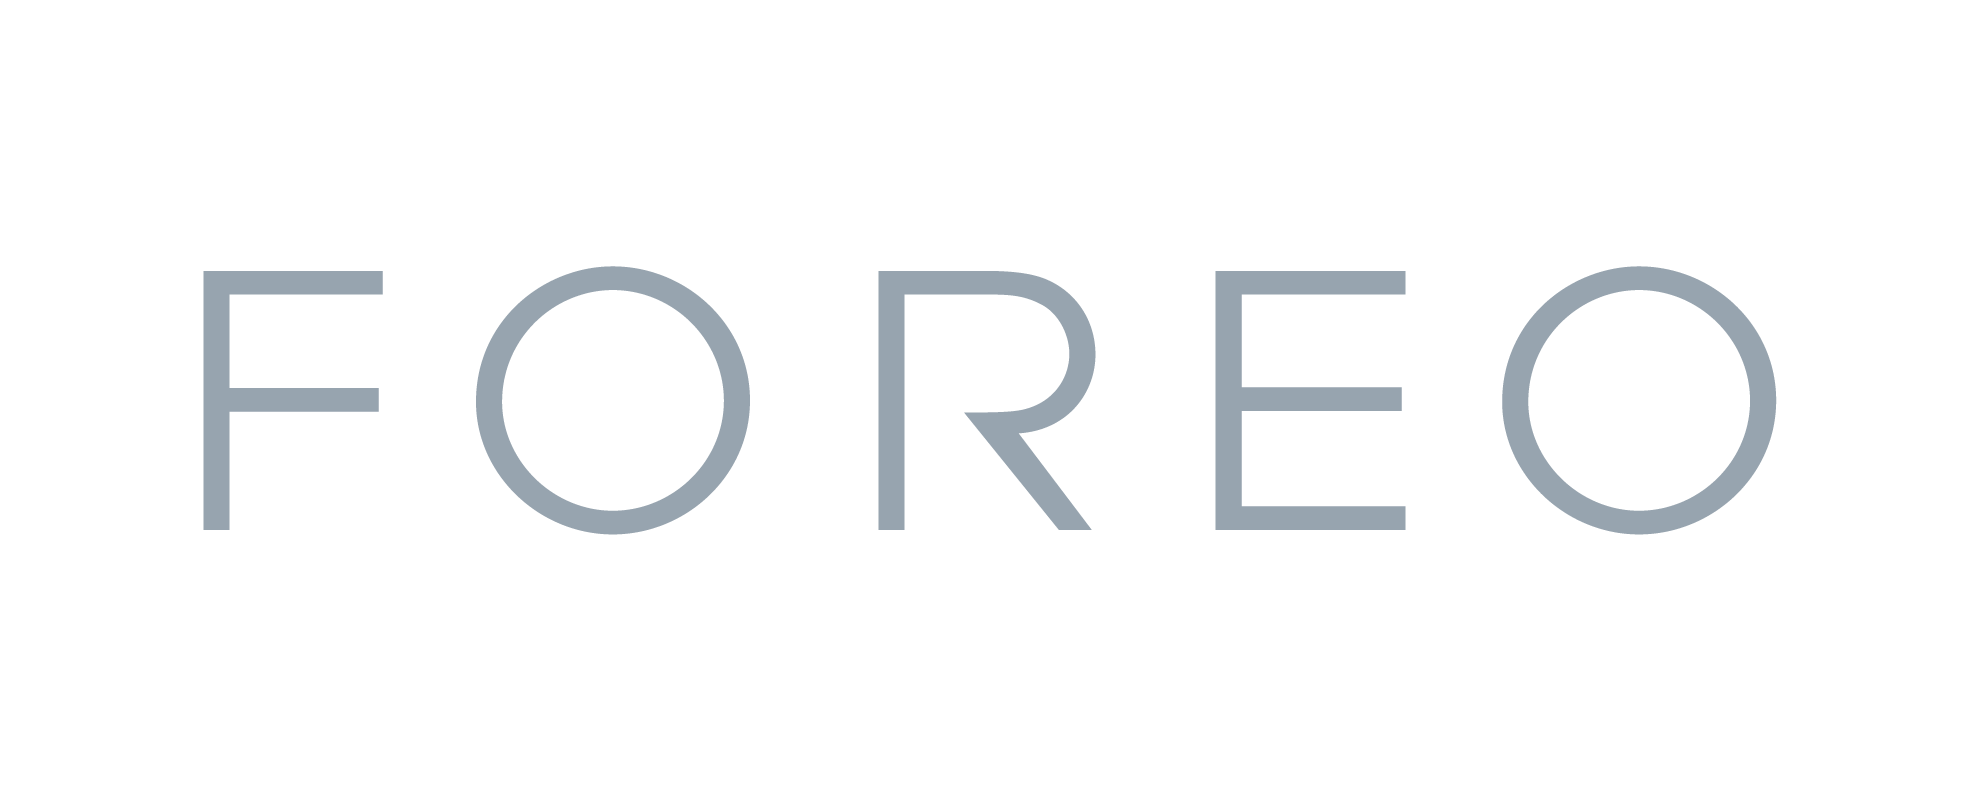 Logo de FOREO